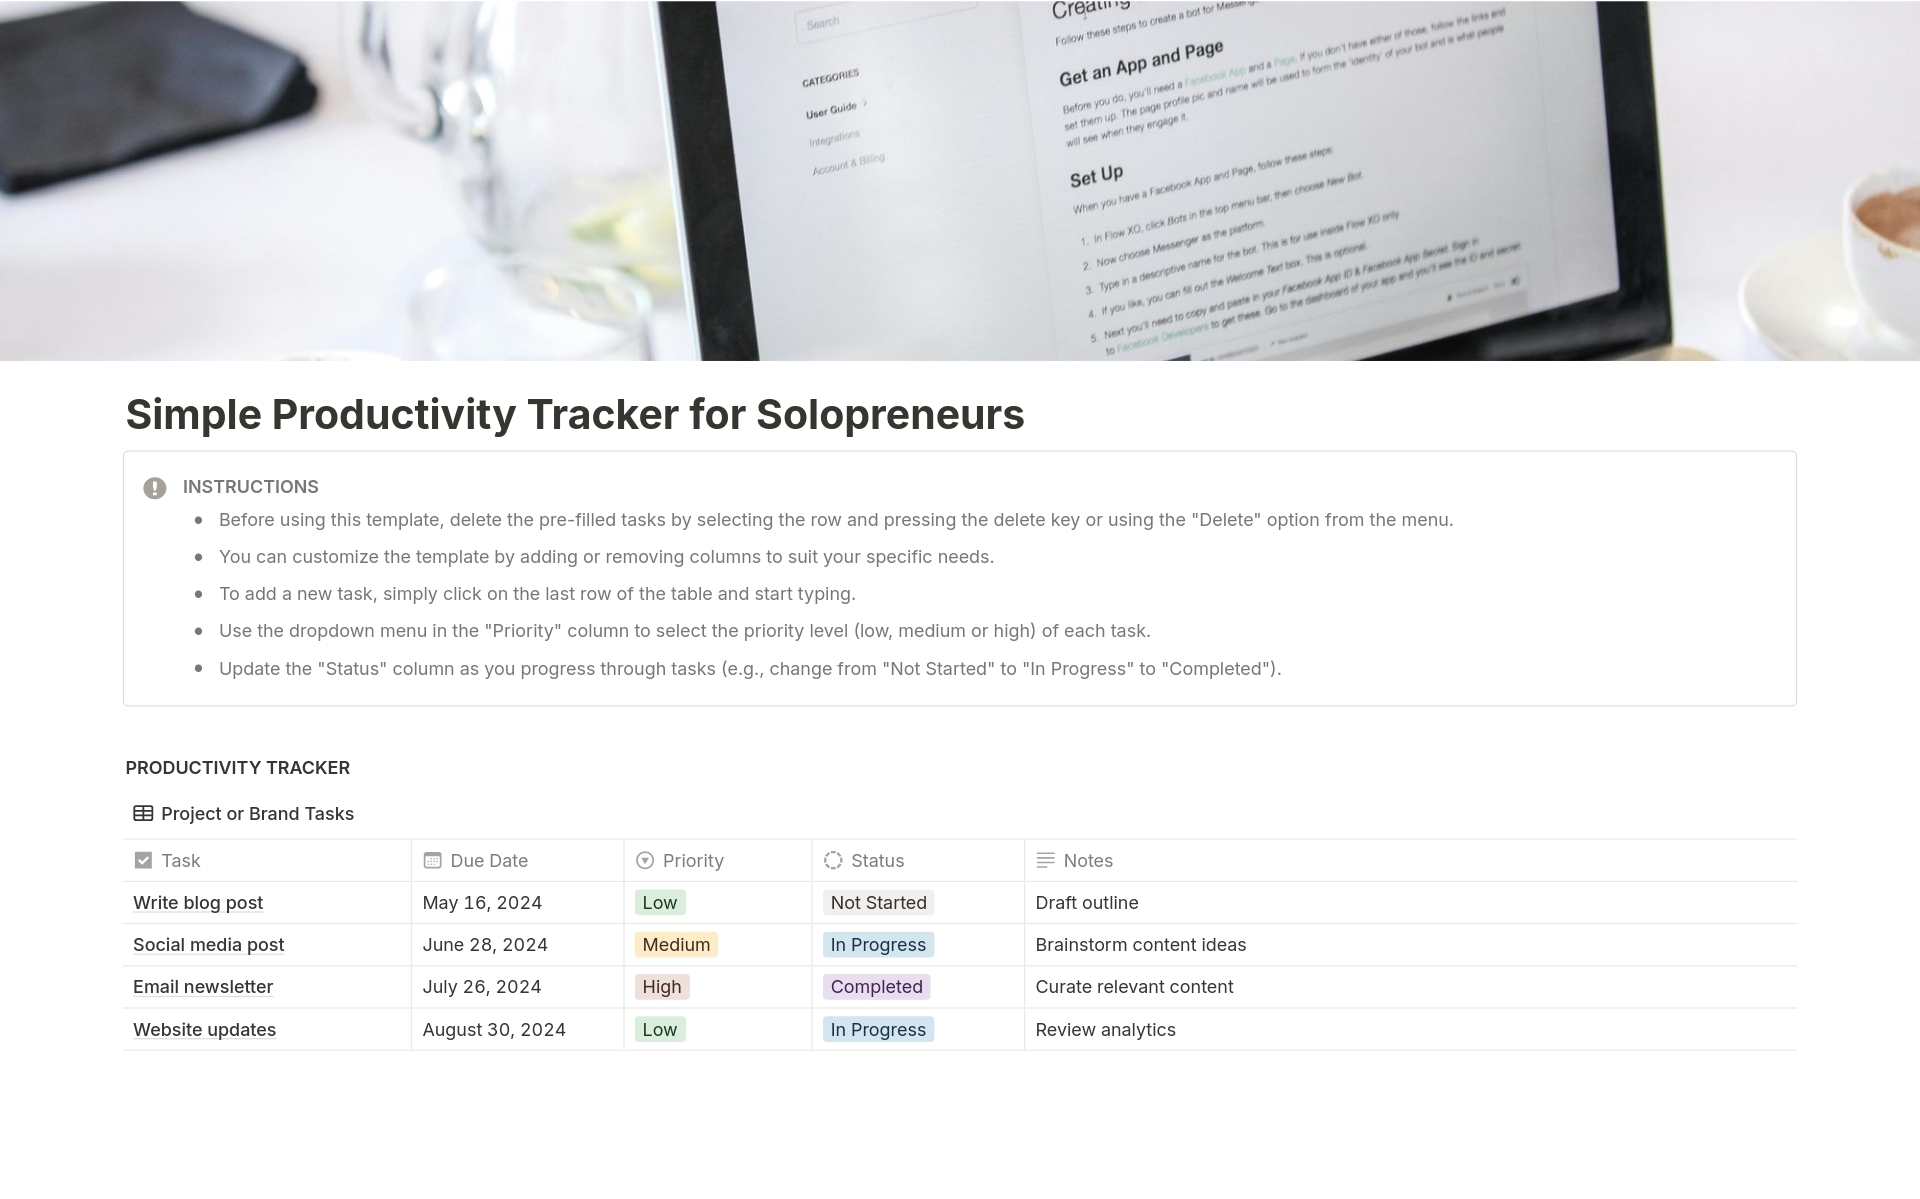 Uma prévia do modelo para Simple Productivity Tracker for Solopreneurs